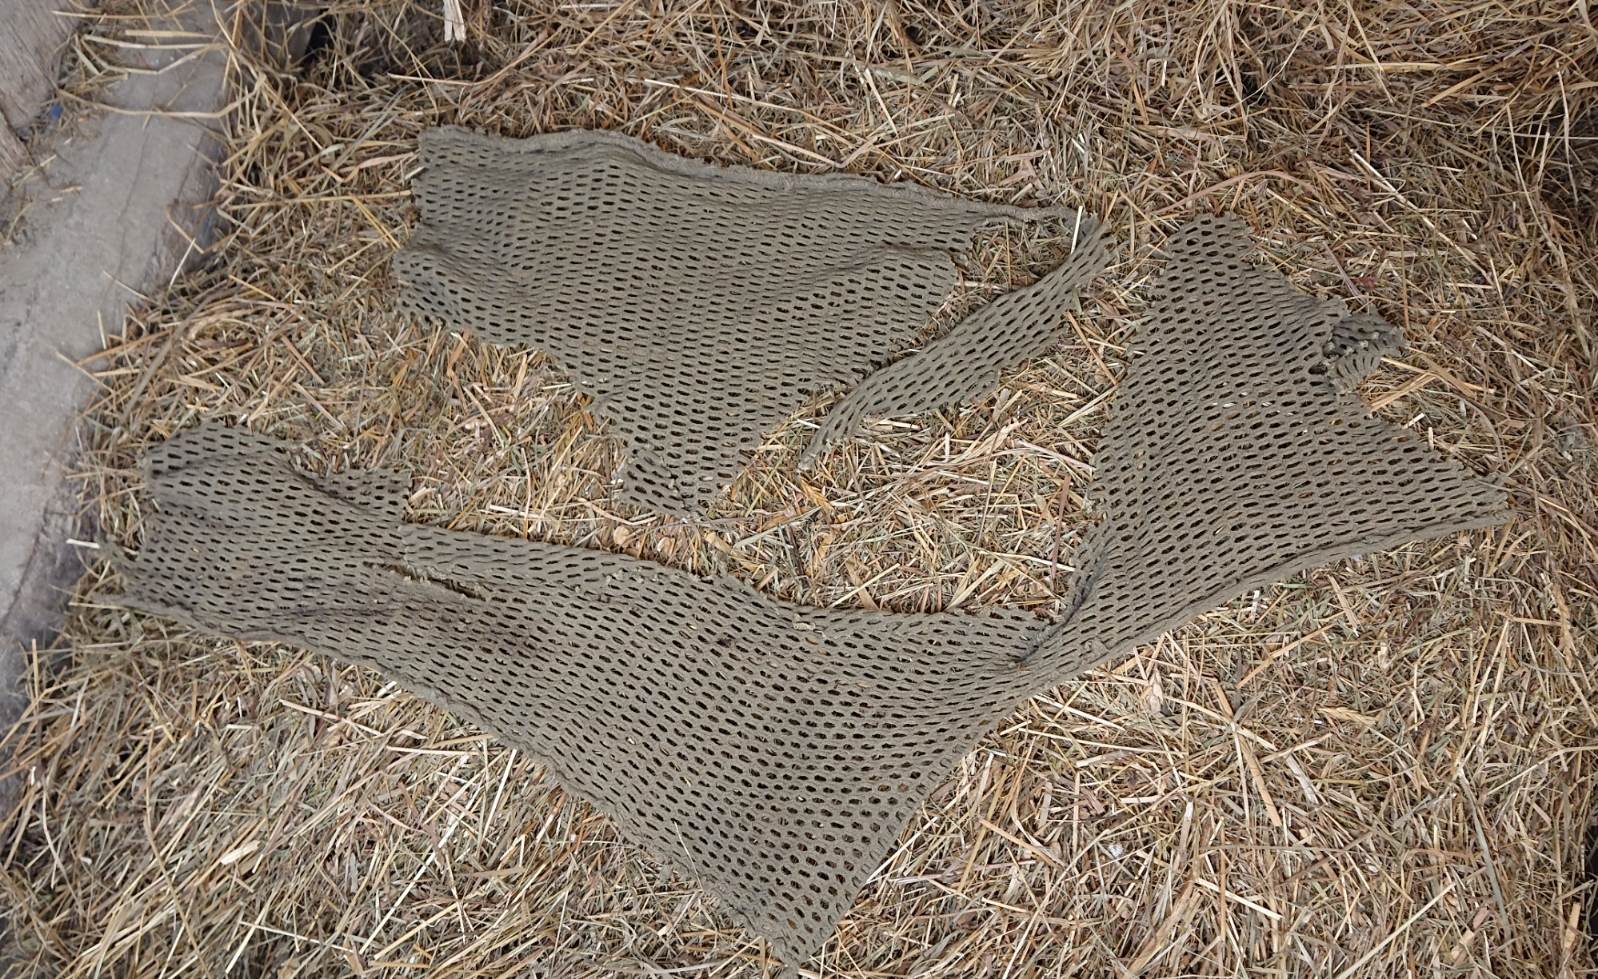 militaria : Morceaux filet camouflage crevette / US ww2amouflage Net Pieces